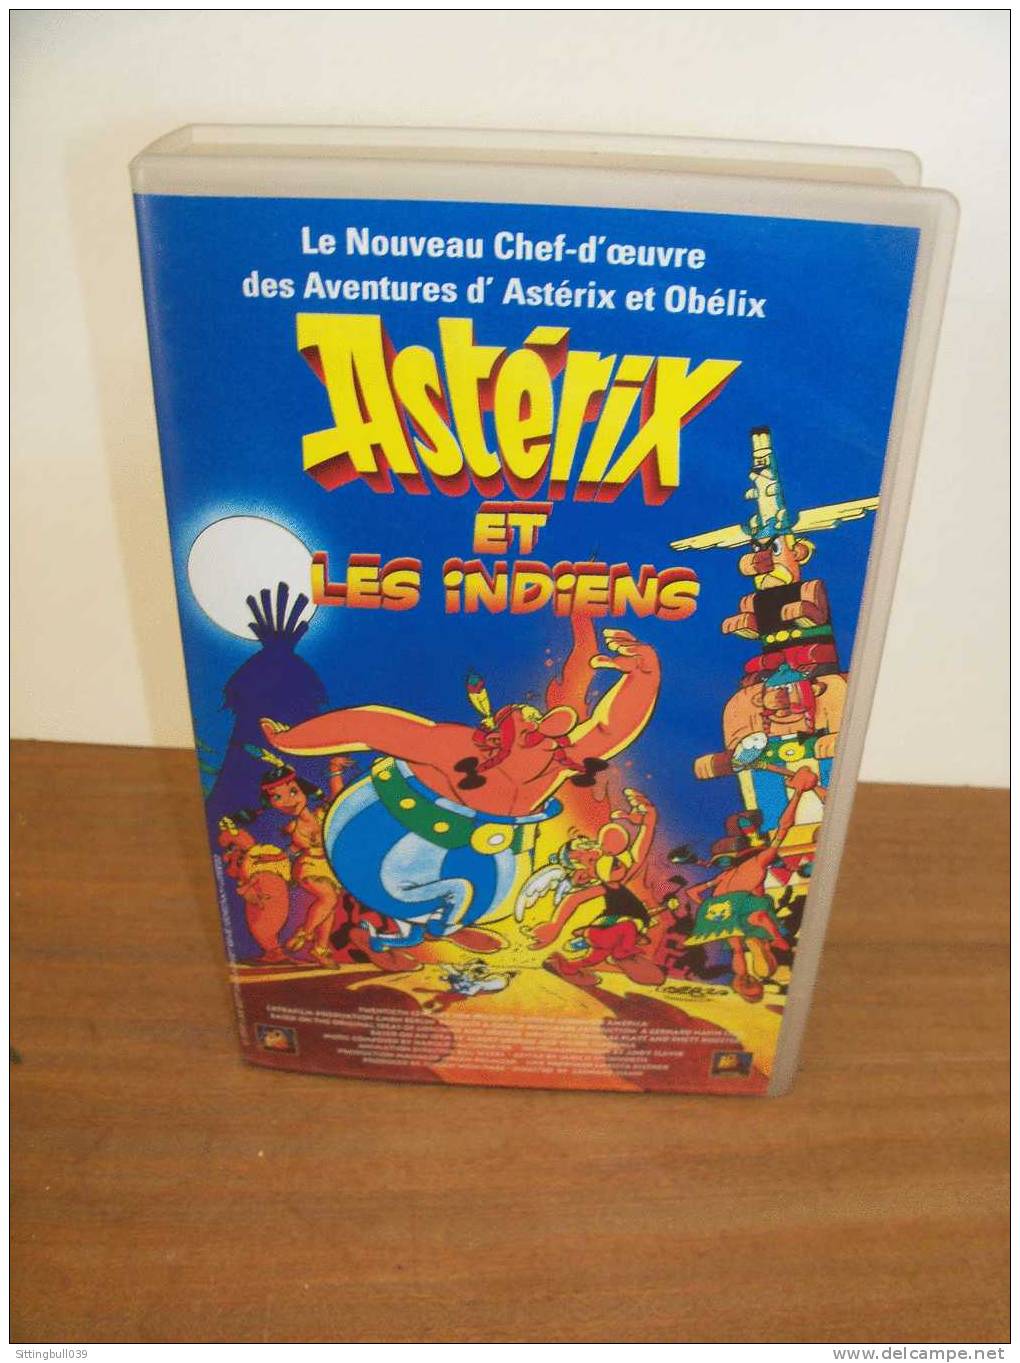 ASTERIX Et LES INDIENS. Le Film En K7 Hi-Fi Stereo + Une Entrée Gratuite Au PARC ASTERIX. 1995 Ed. A. R/GOSCINNY-UDERZO - Kassetten & DVD